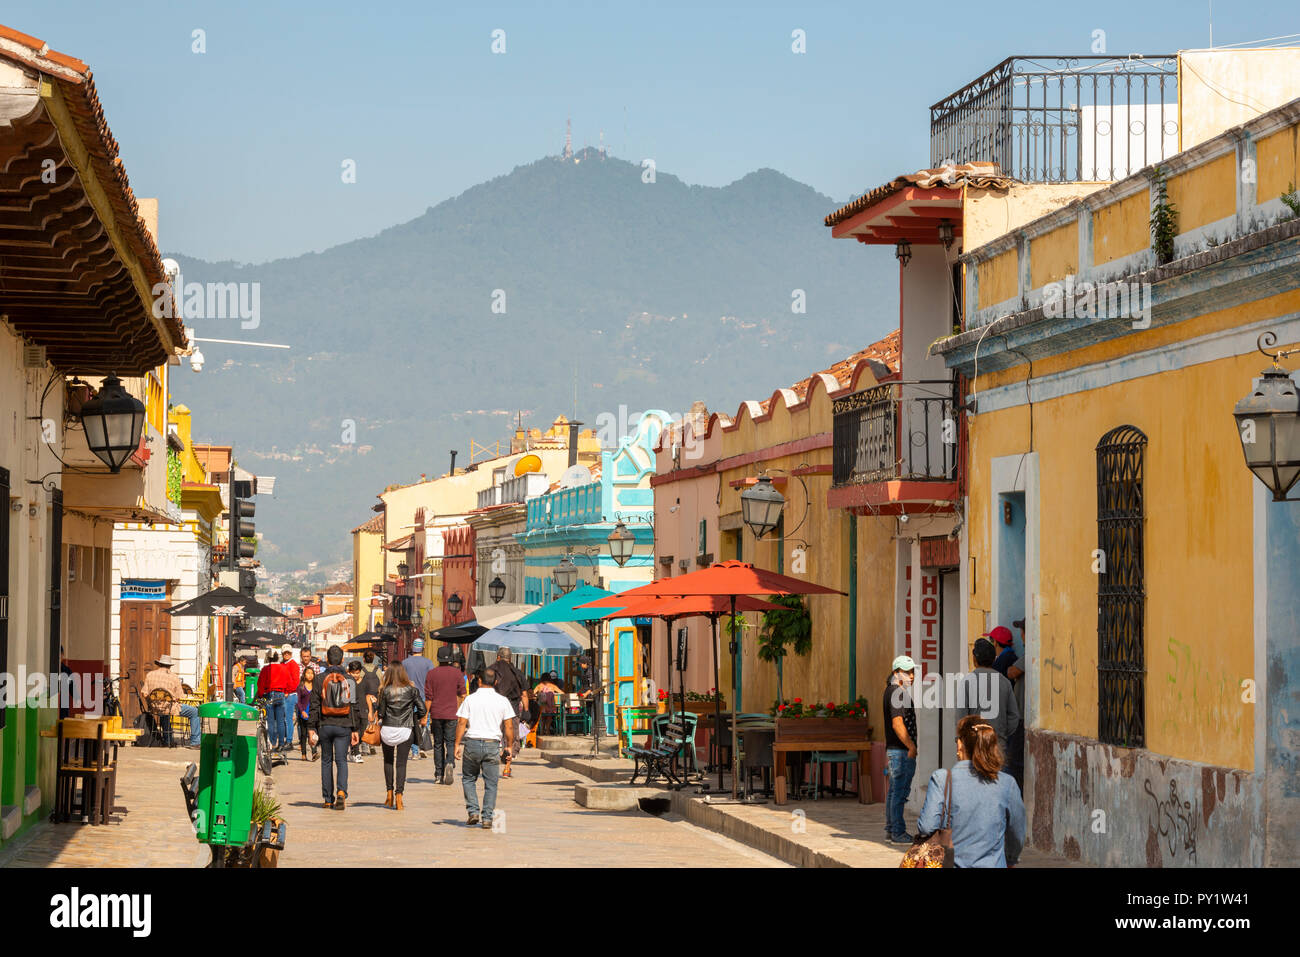 SAN CRISTOBAL DE LAS CASAS, MEXICO - MAY 25, 2018: Unidentified people walk along Real de Guadalupe in the tourist town of San Cristobal De Las Casas, Stock Photo